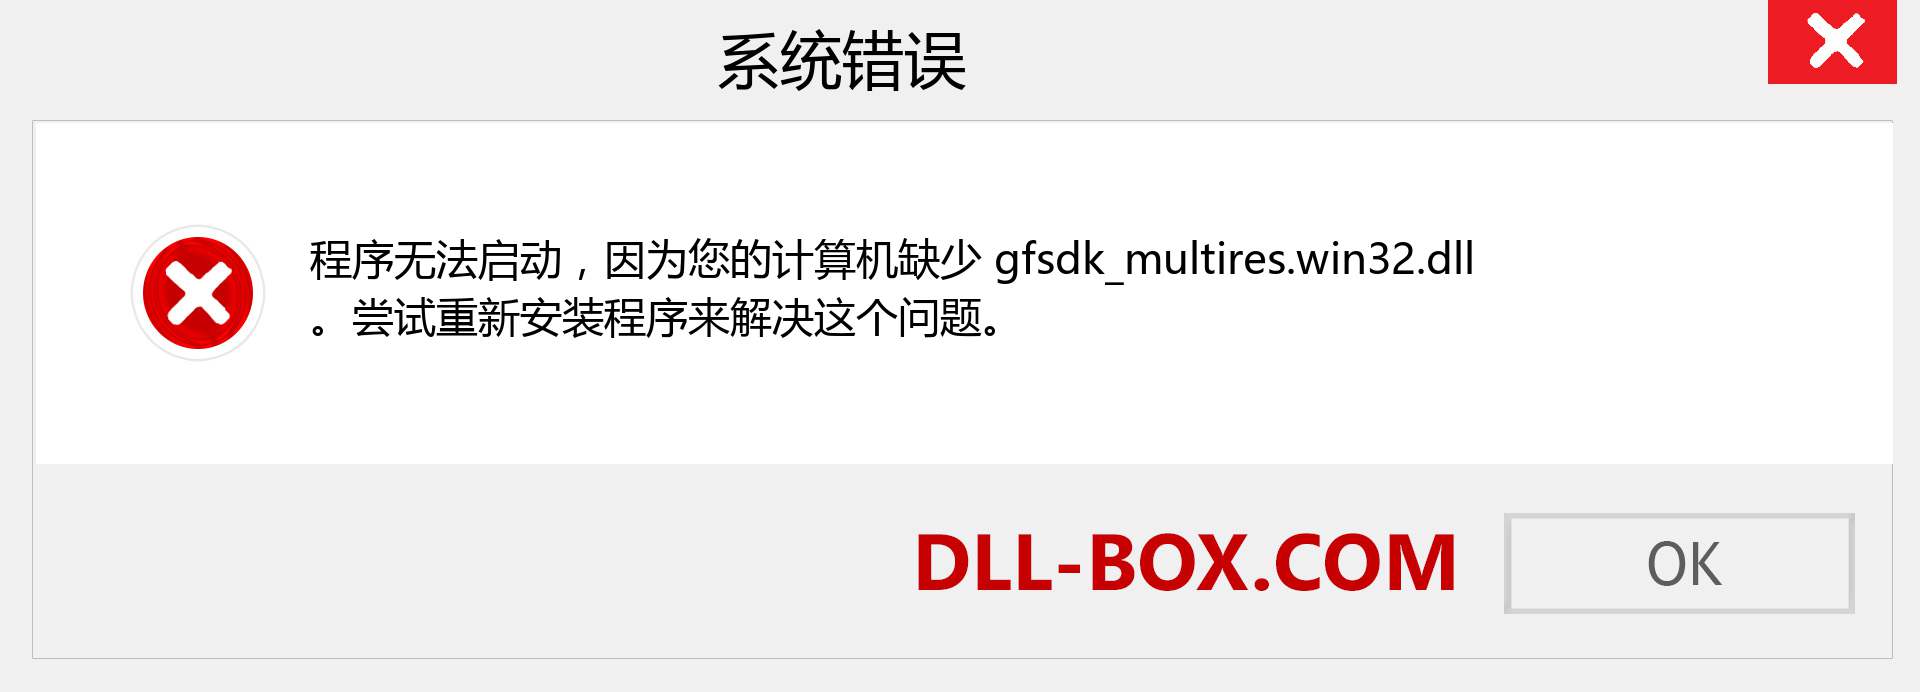 gfsdk_multires.win32.dll 文件丢失？。 适用于 Windows 7、8、10 的下载 - 修复 Windows、照片、图像上的 gfsdk_multires.win32 dll 丢失错误